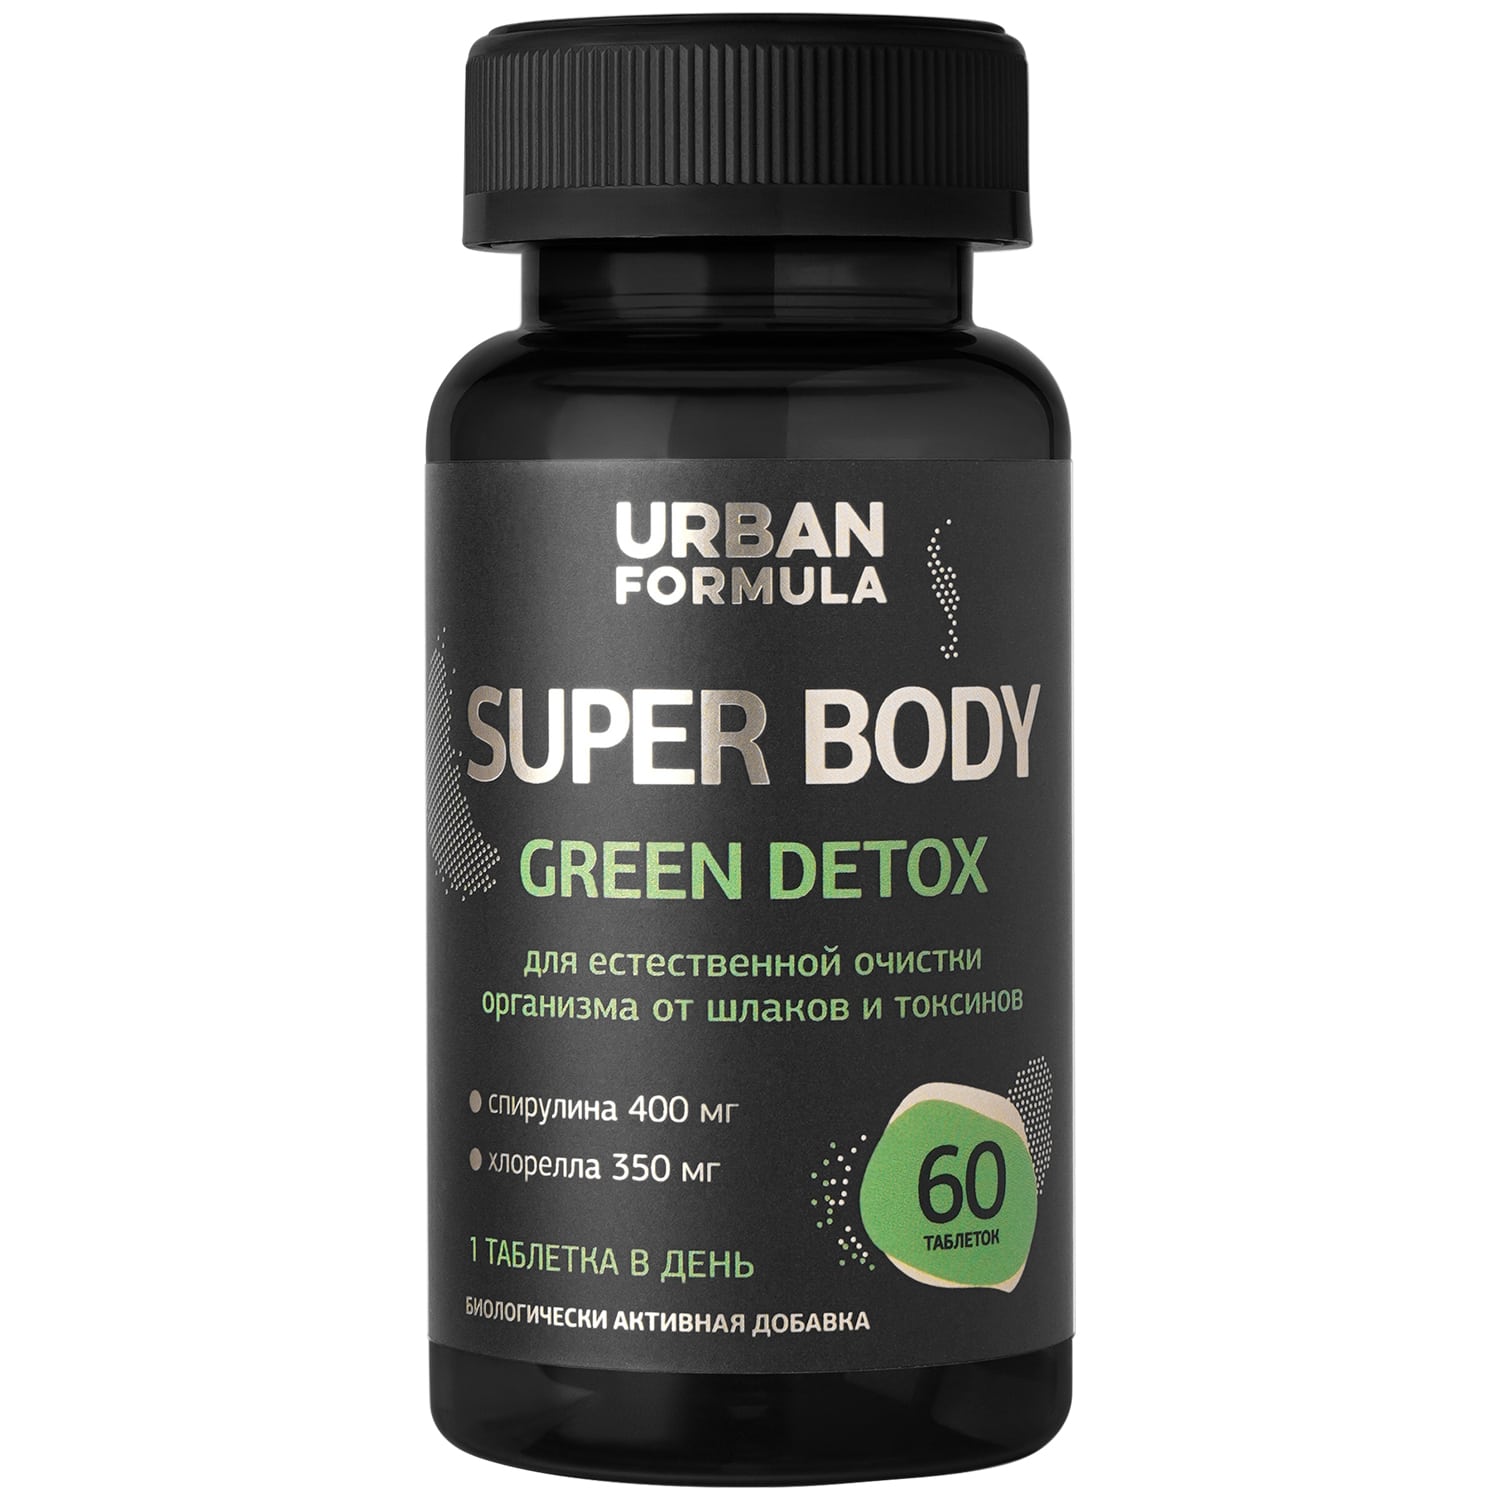 Urban Formula Комплекс на растительной основе Green Detox, 60 таблеток (Urban Formula, Super Body) urban formula super iron